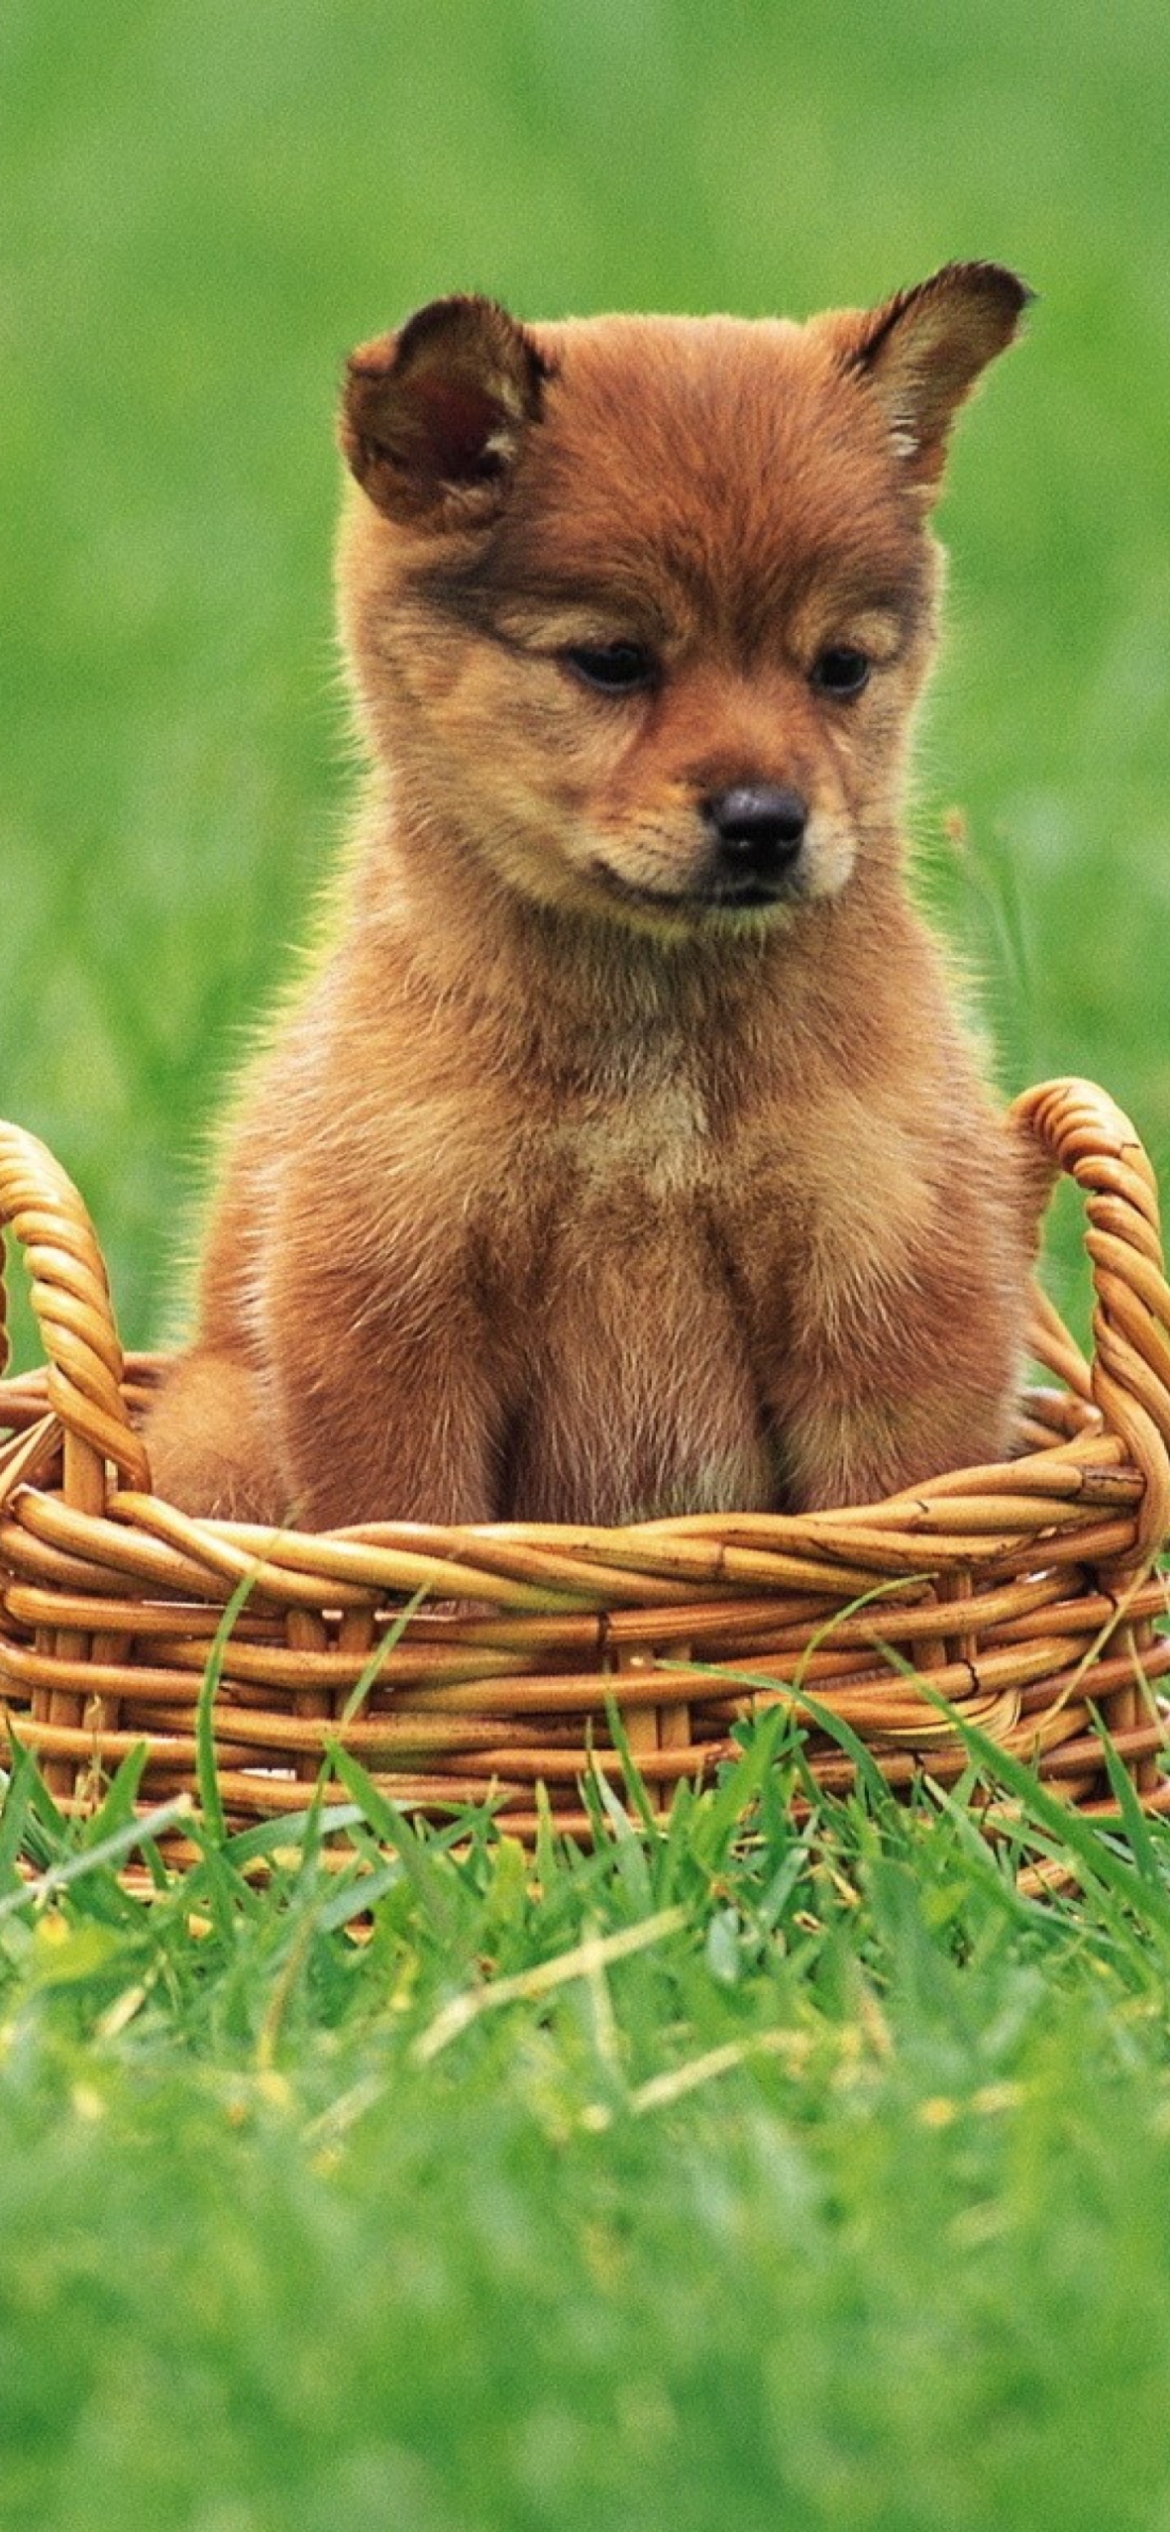 Puppy In Basket screenshot #1 1170x2532